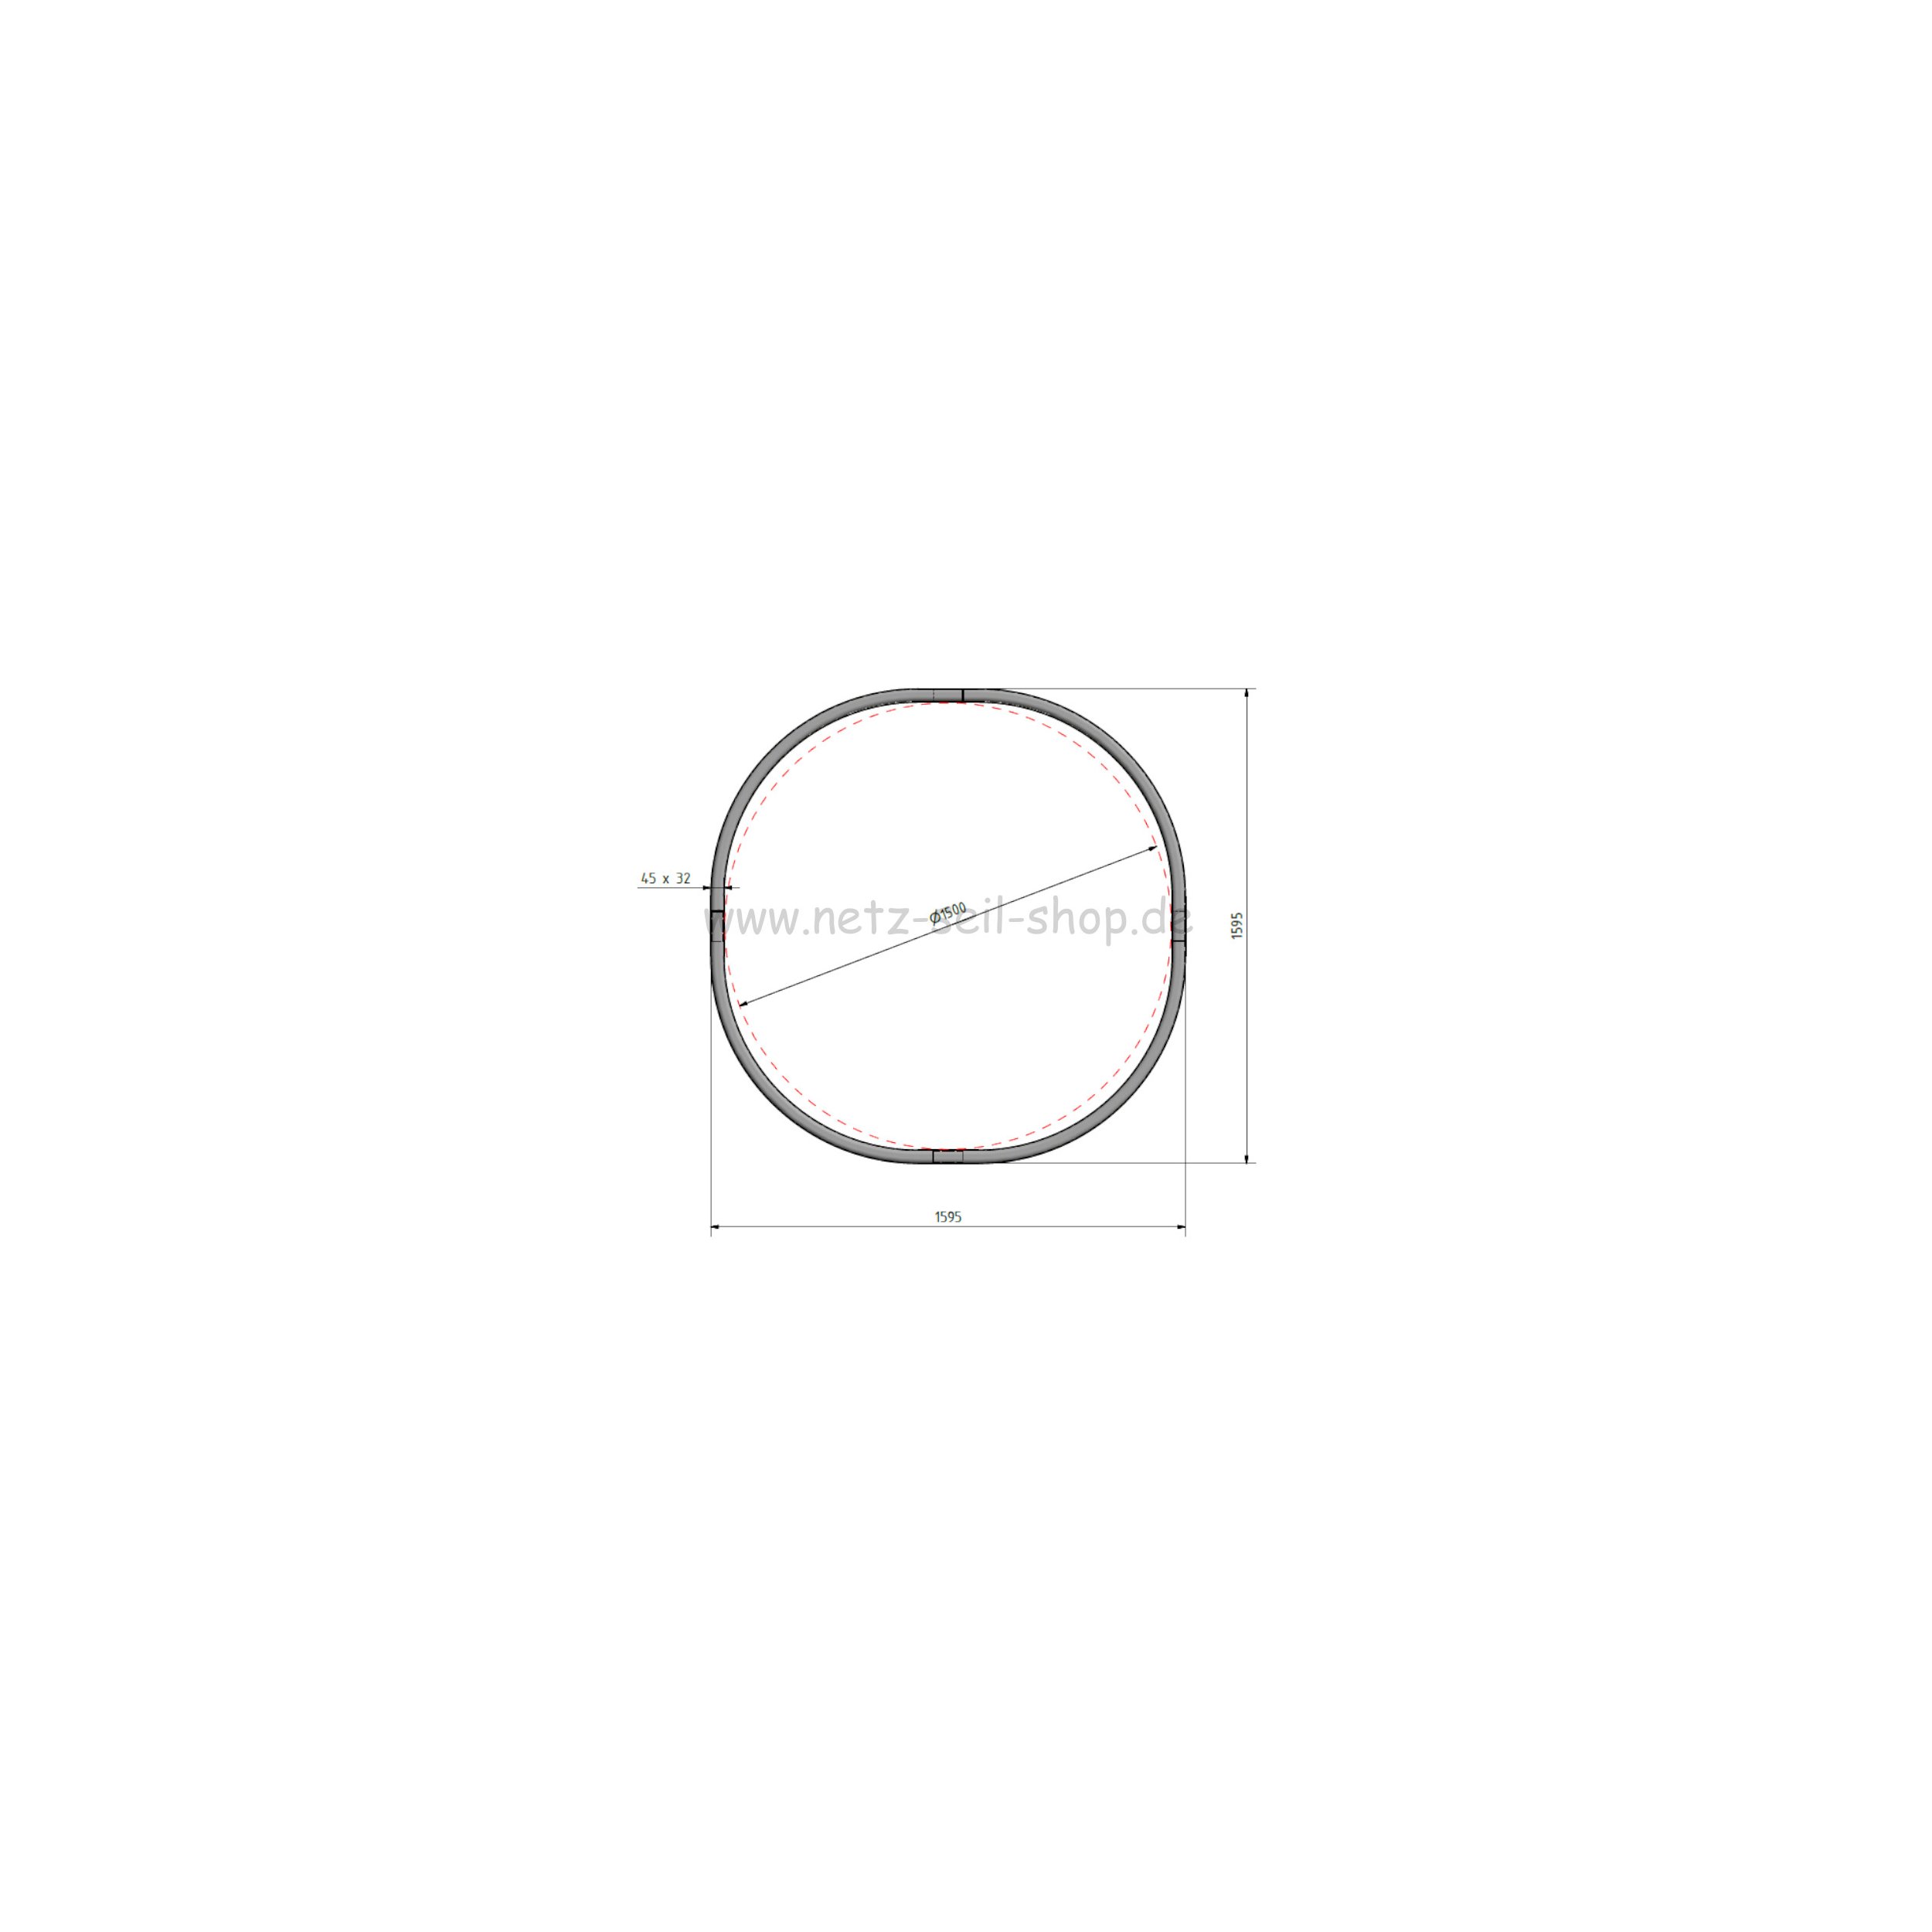 Heunetz für Rundballen, 170 cm Durchmesser, Höhe 120cm,  Ø 5 mm Garn, # 80 mm Maschenweite mit PE Ring